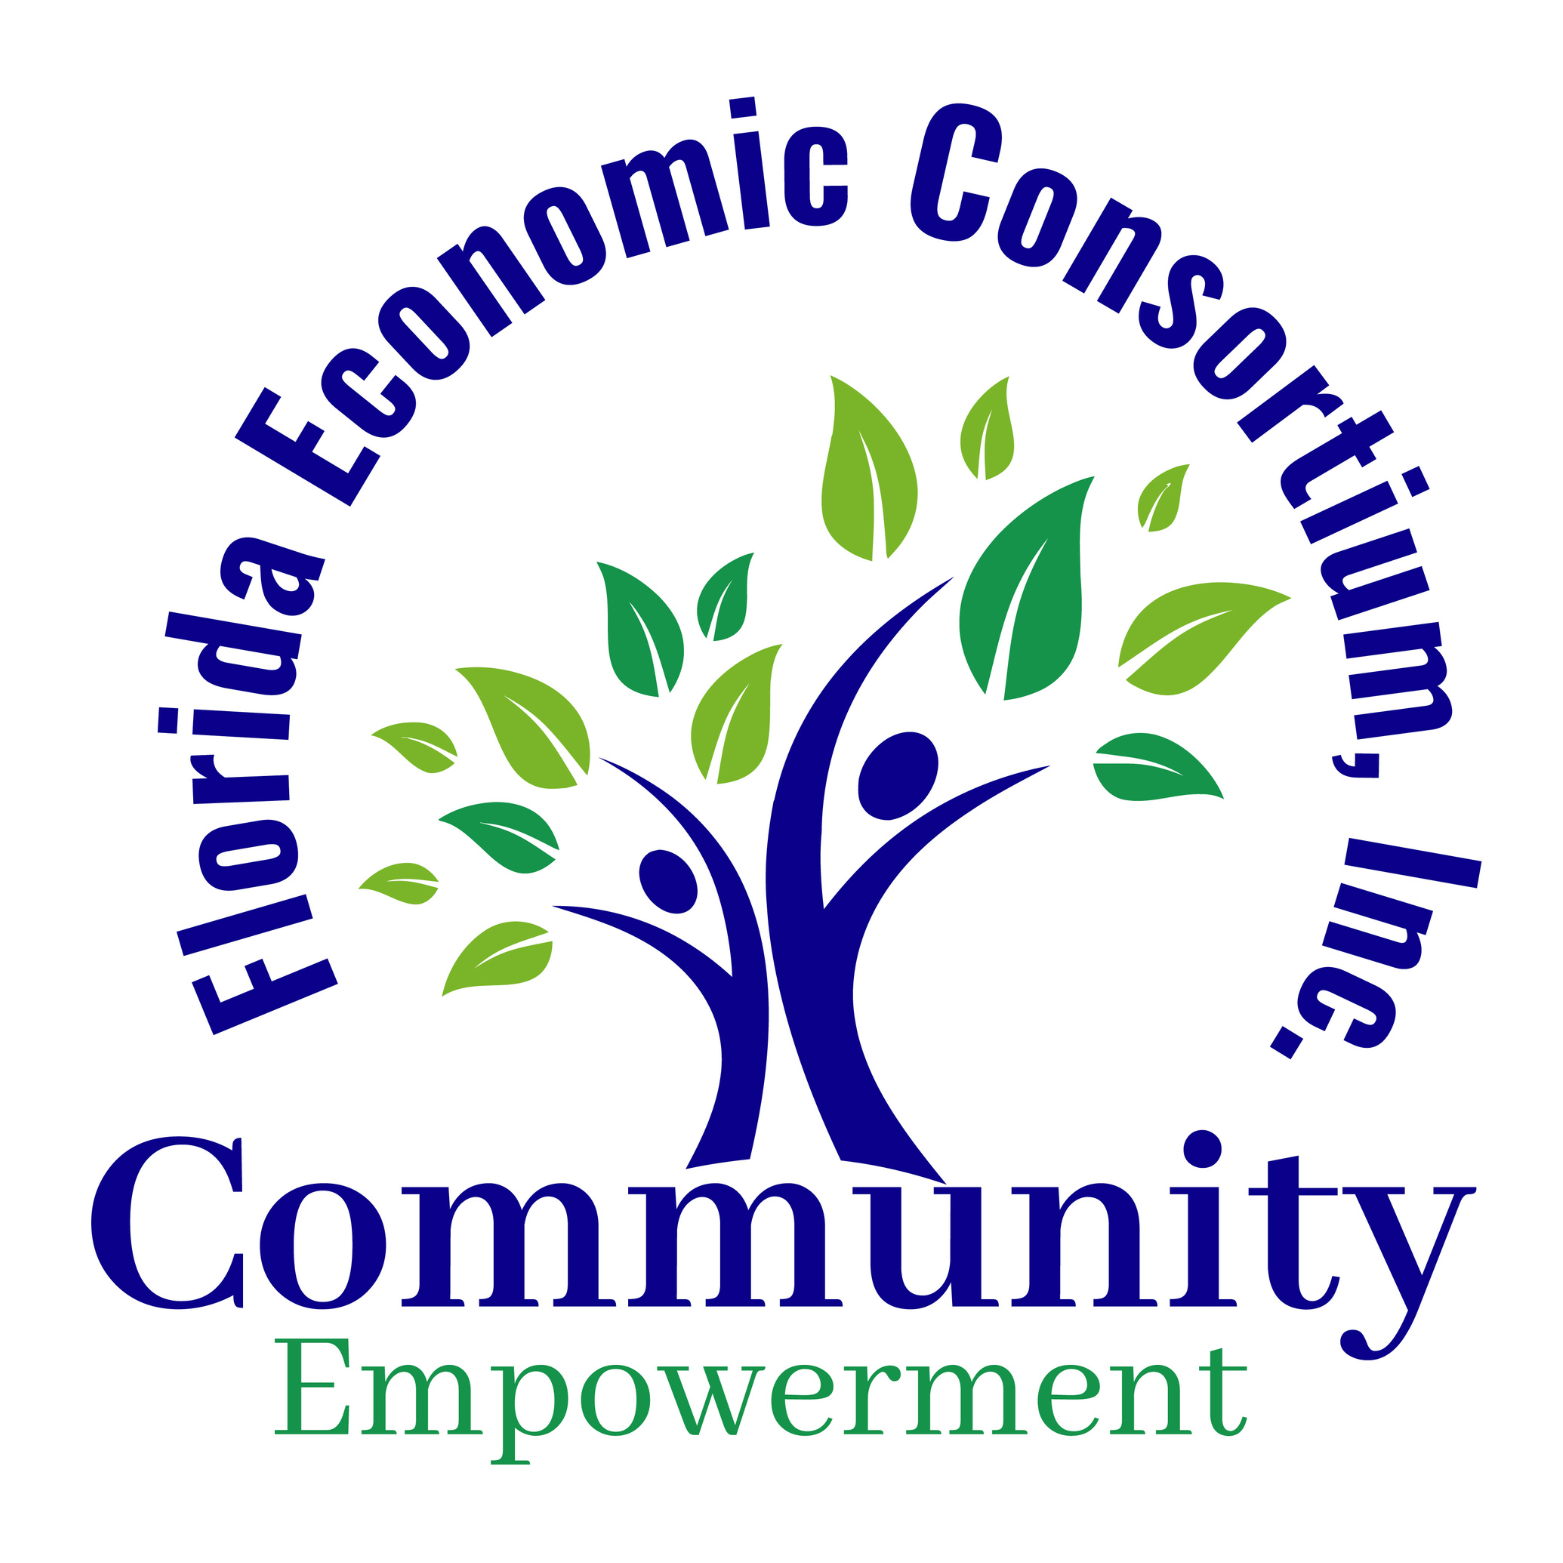 Florida Economic Consortium